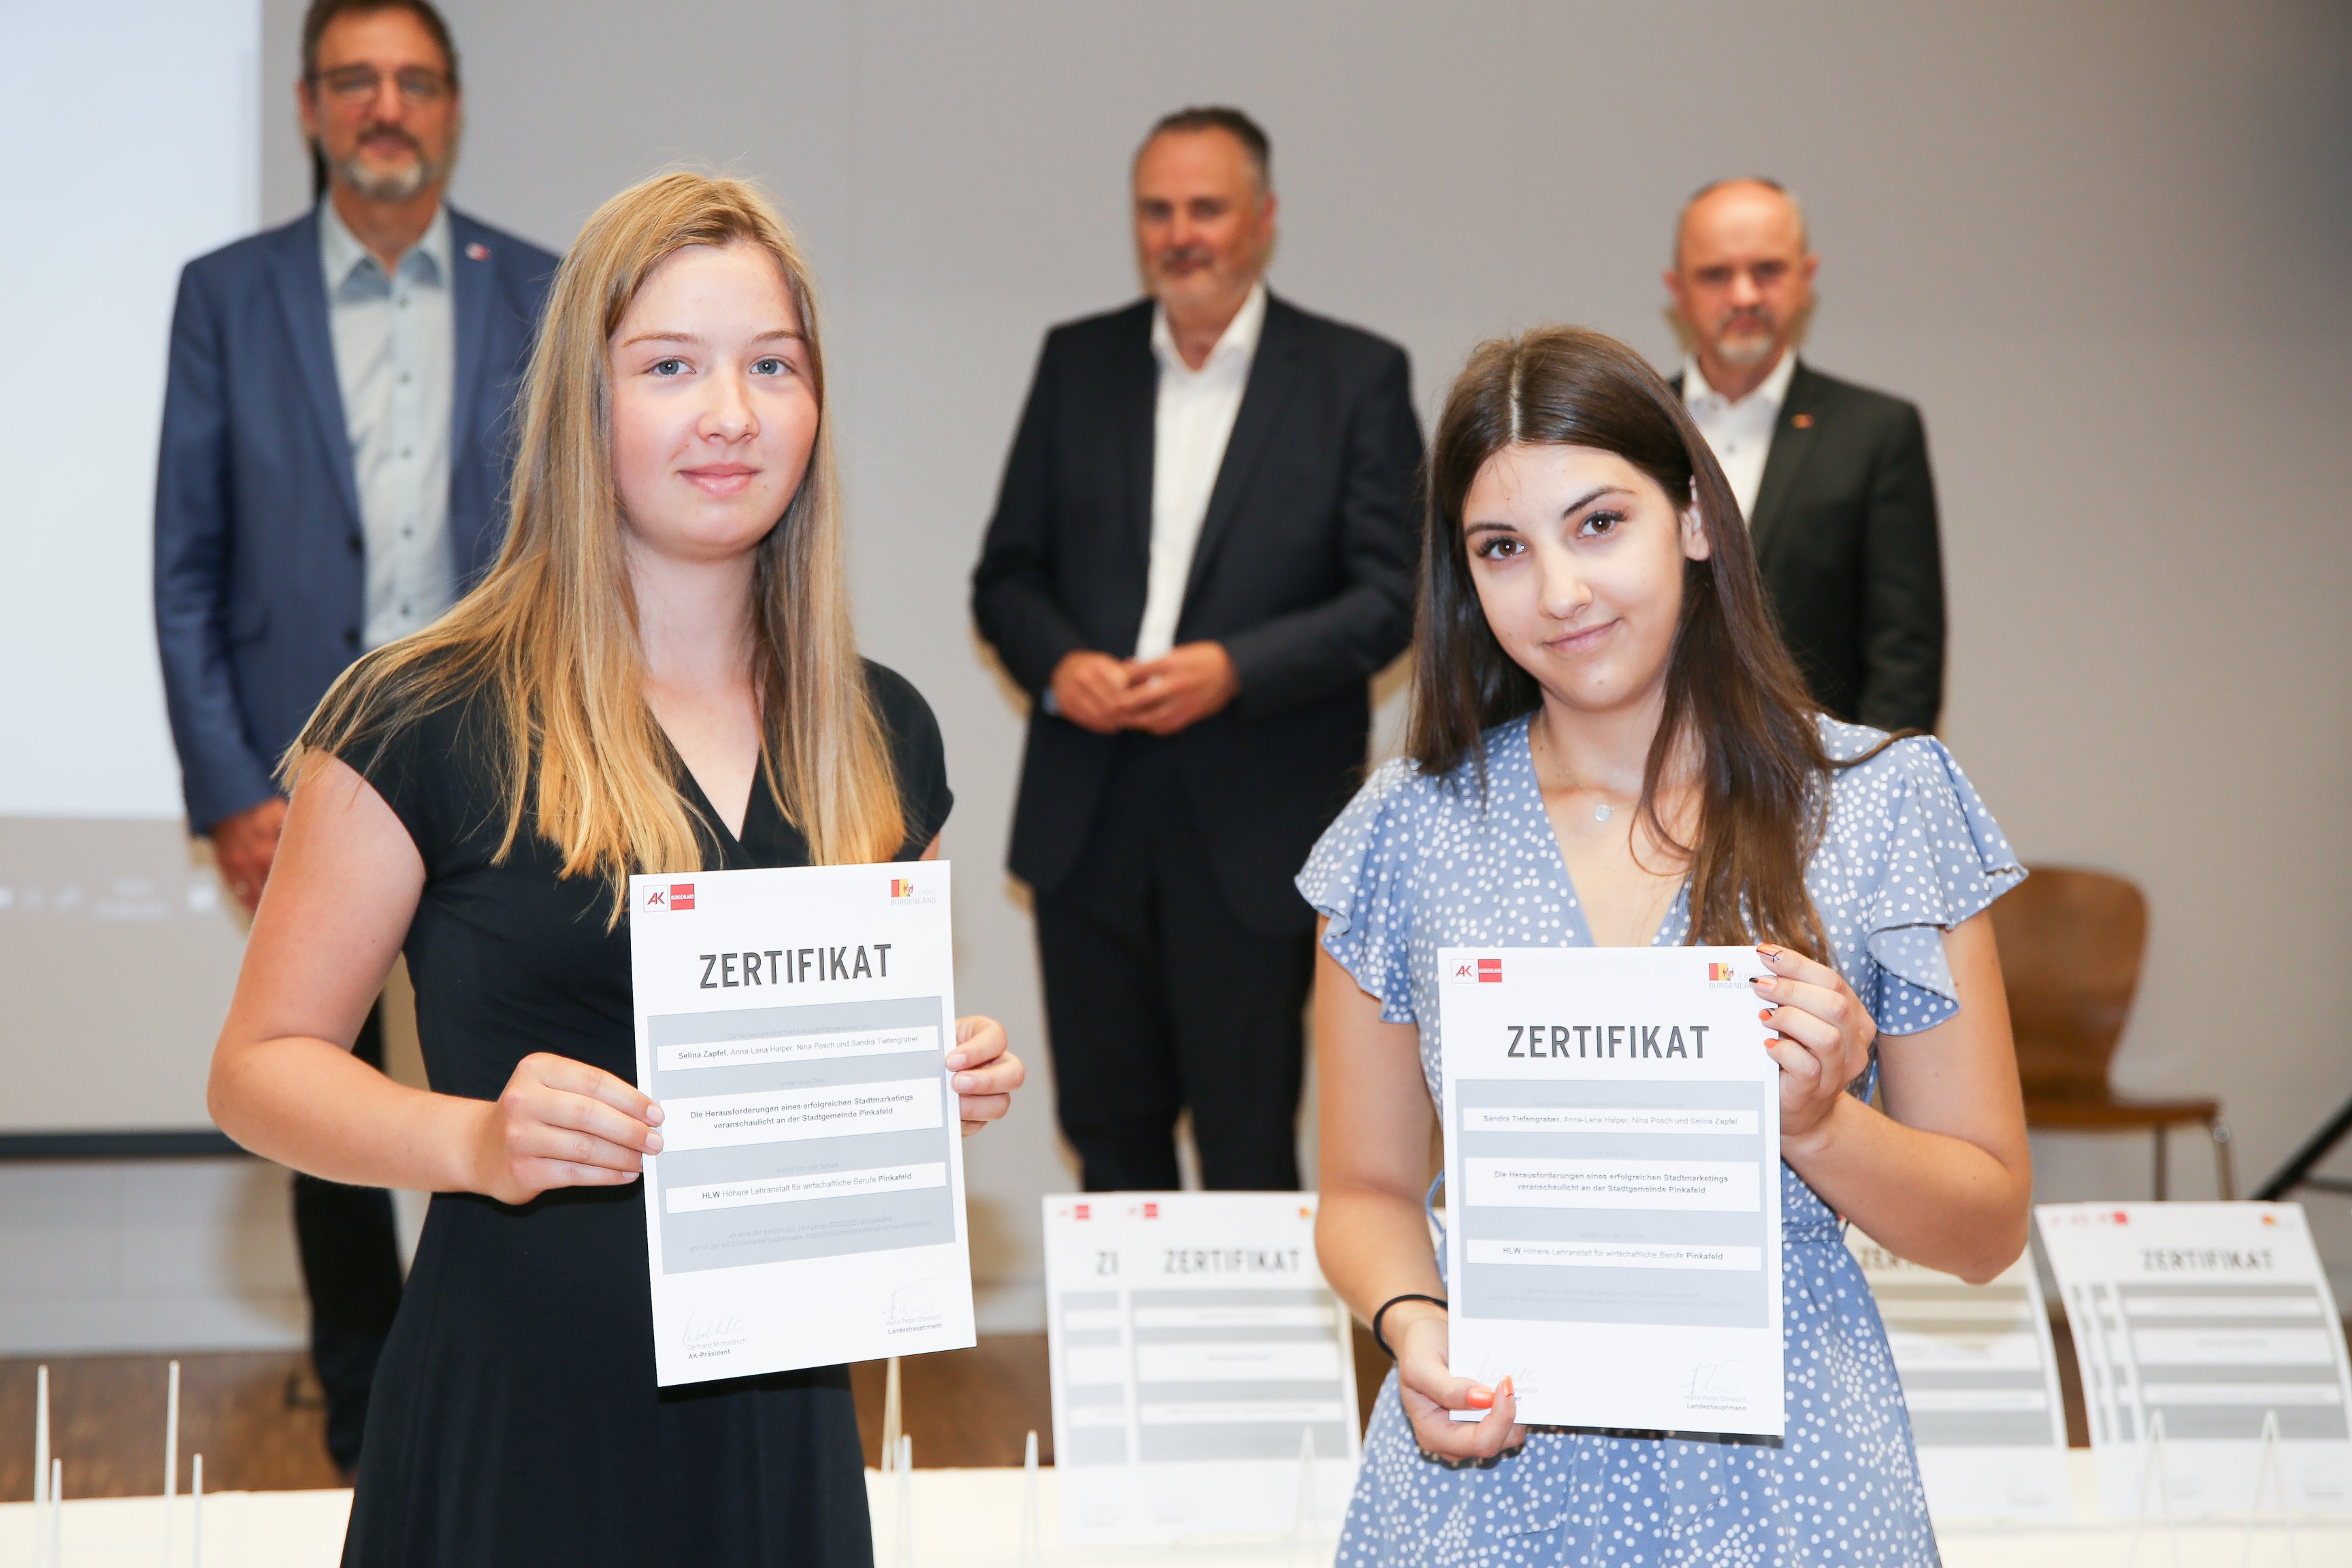 SchülerInnen der Schule "HLW Pinkafeld" erhalten Zertifikat für ihre schriftliche Arbeit "Stadtmarketing - veranschaulicht am Beispiel der Stadt Pinkafeld".